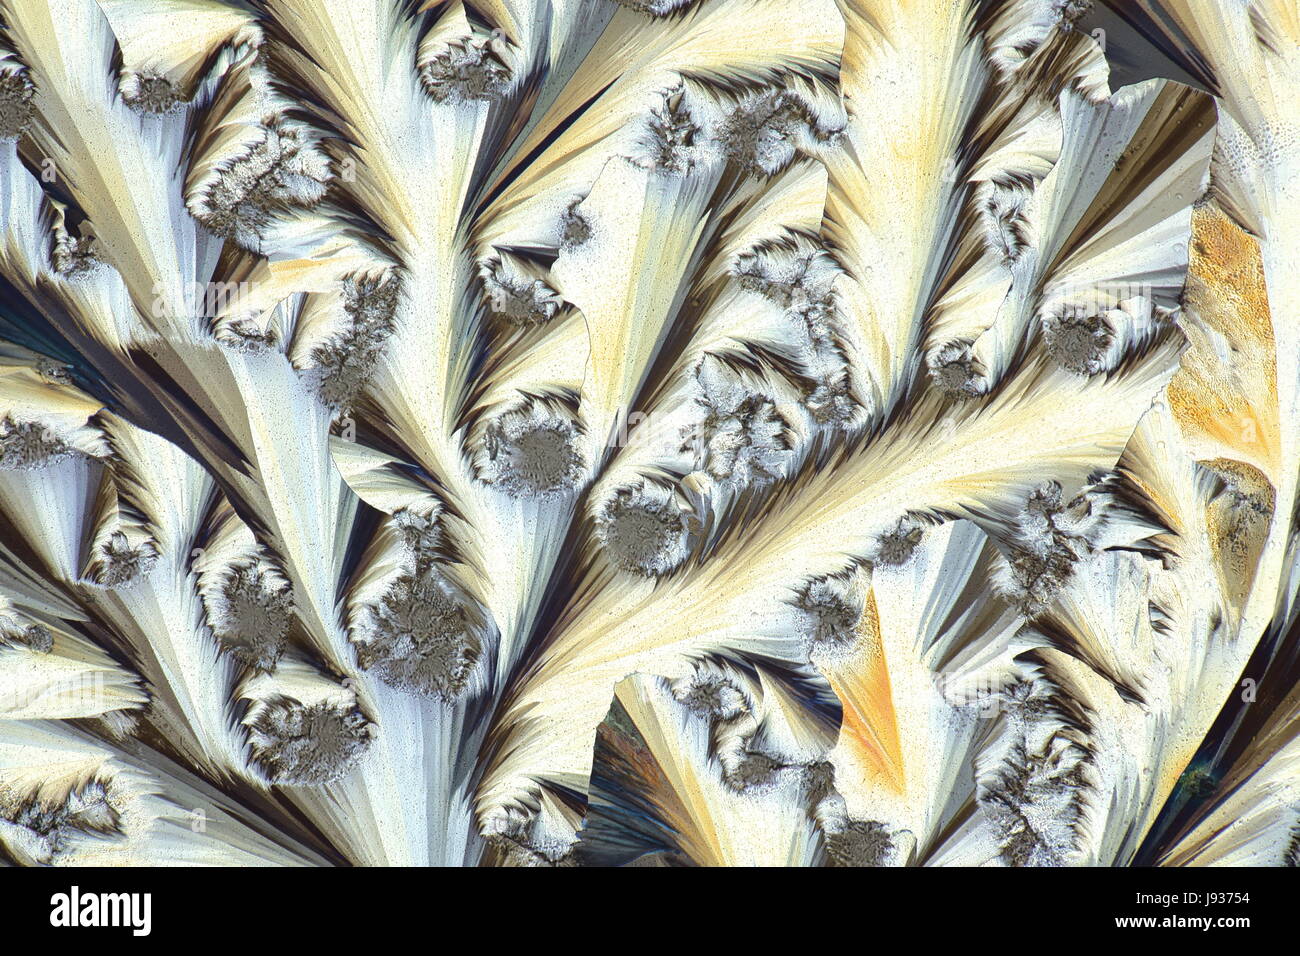 Kristalle von gemeinsamen Schmerzmittel Paracetamol (Panadol/Panacod).  Mikroskopbild, fotografiert in polarisiertem Licht. Stockfoto